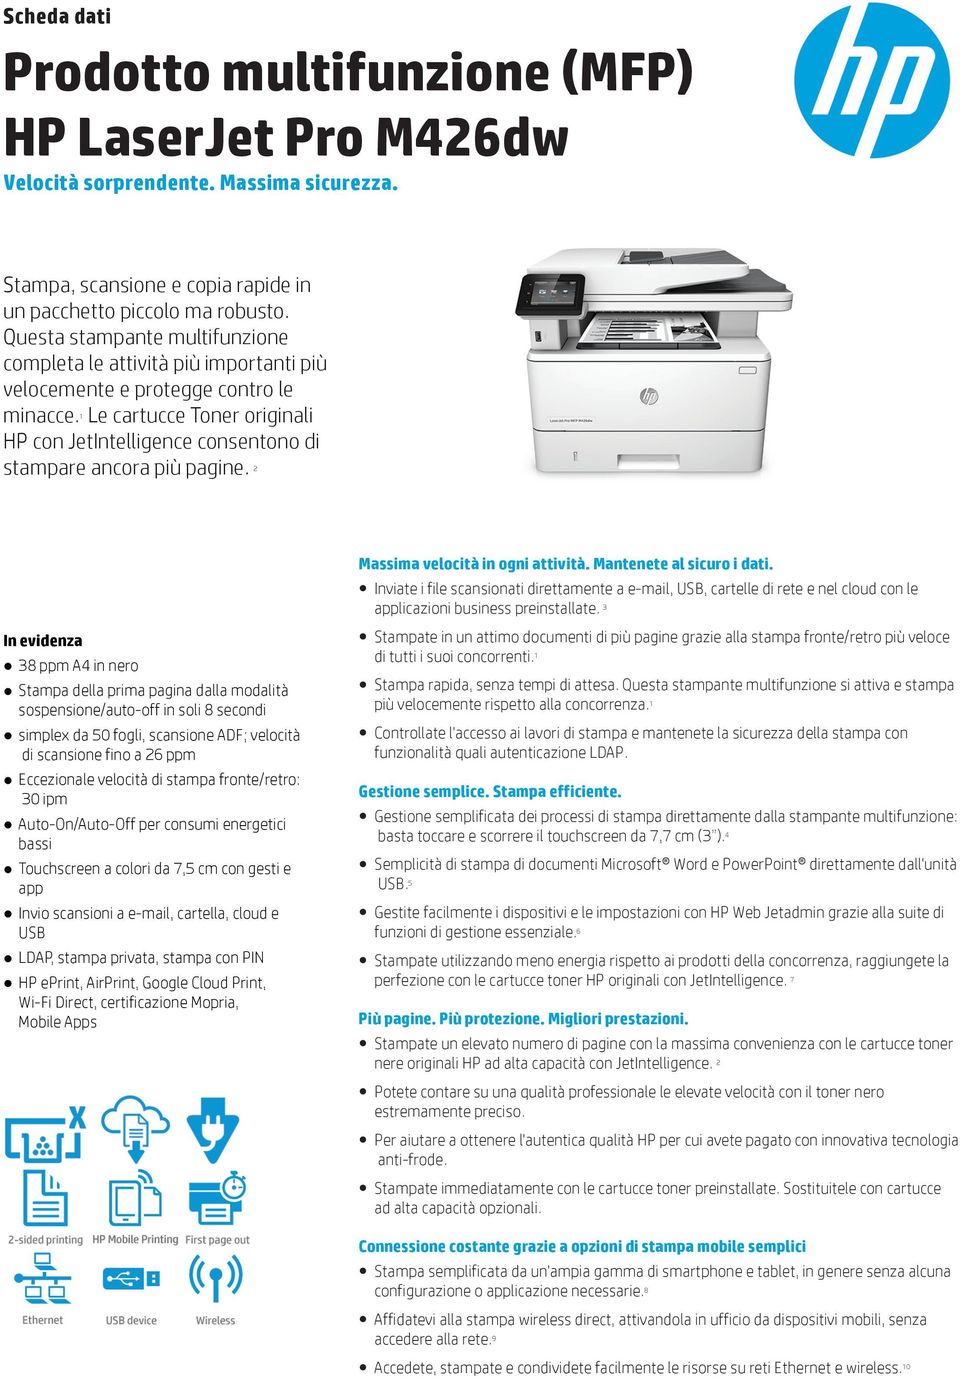 1 Le cartucce Toner originali HP con JetIntelligence consentono di stampare ancora più pagine.